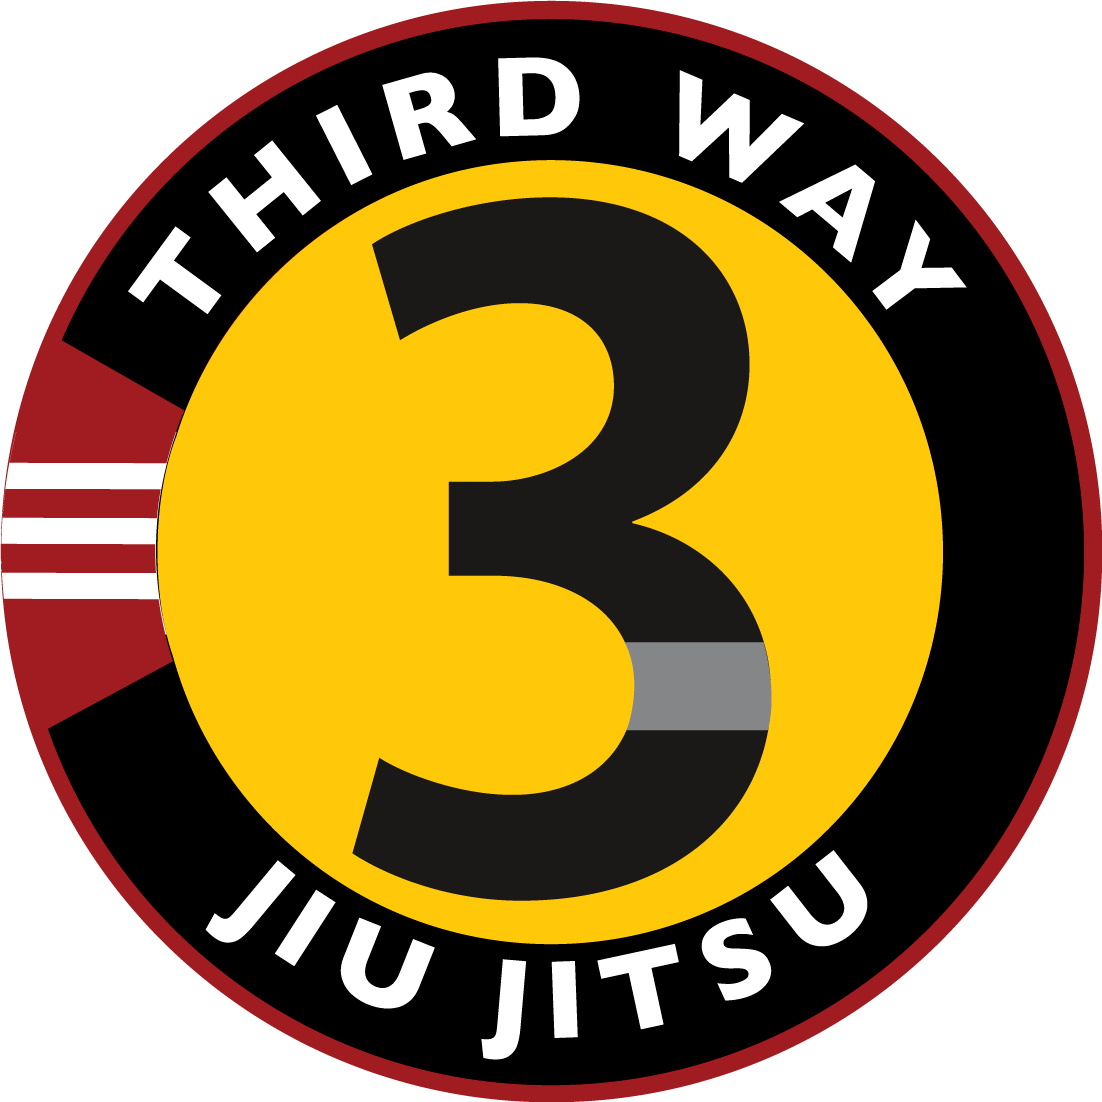 Third Way Jiu Jitsu